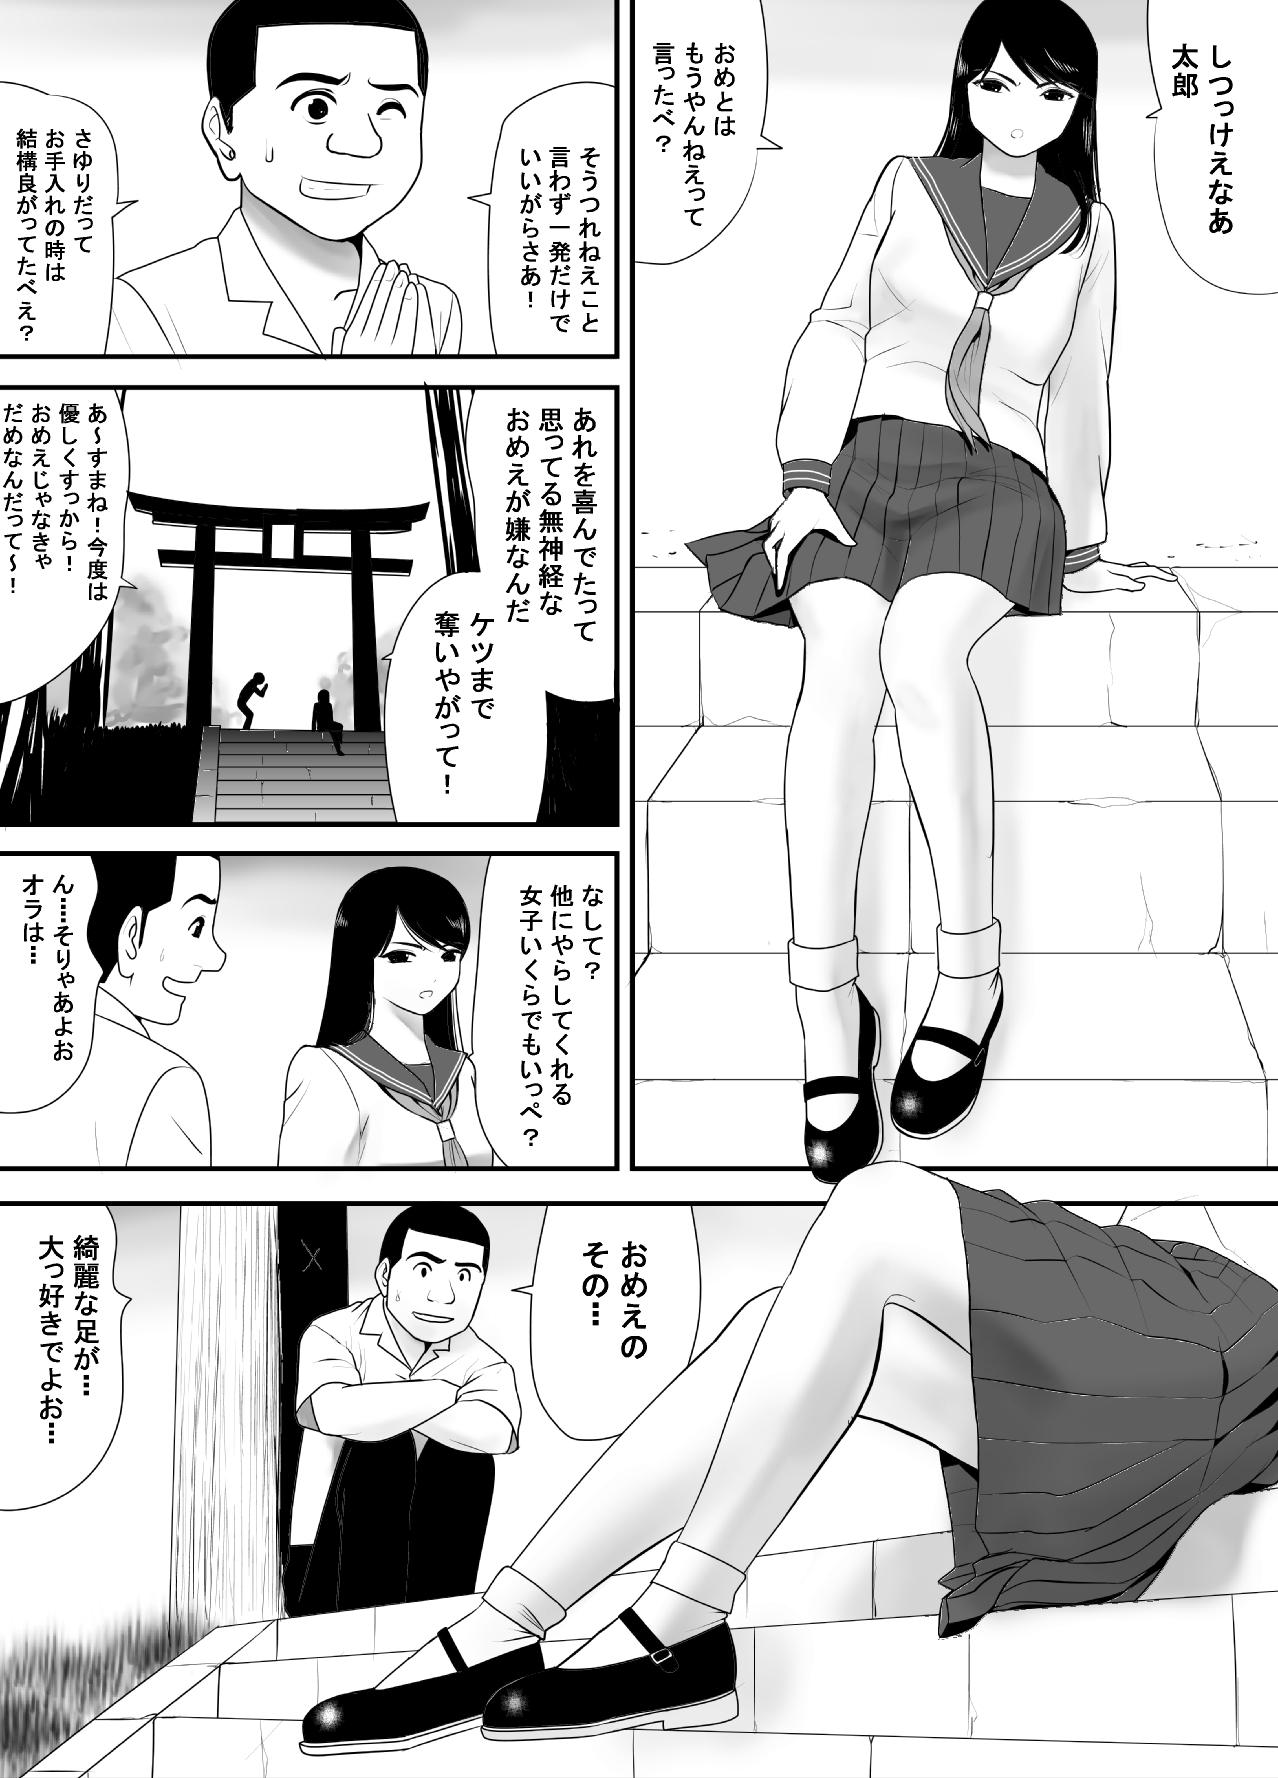 Grandma Subete o Ukeirete Kureru Tomodachi no Okka-san - Original Muscle - Page 9